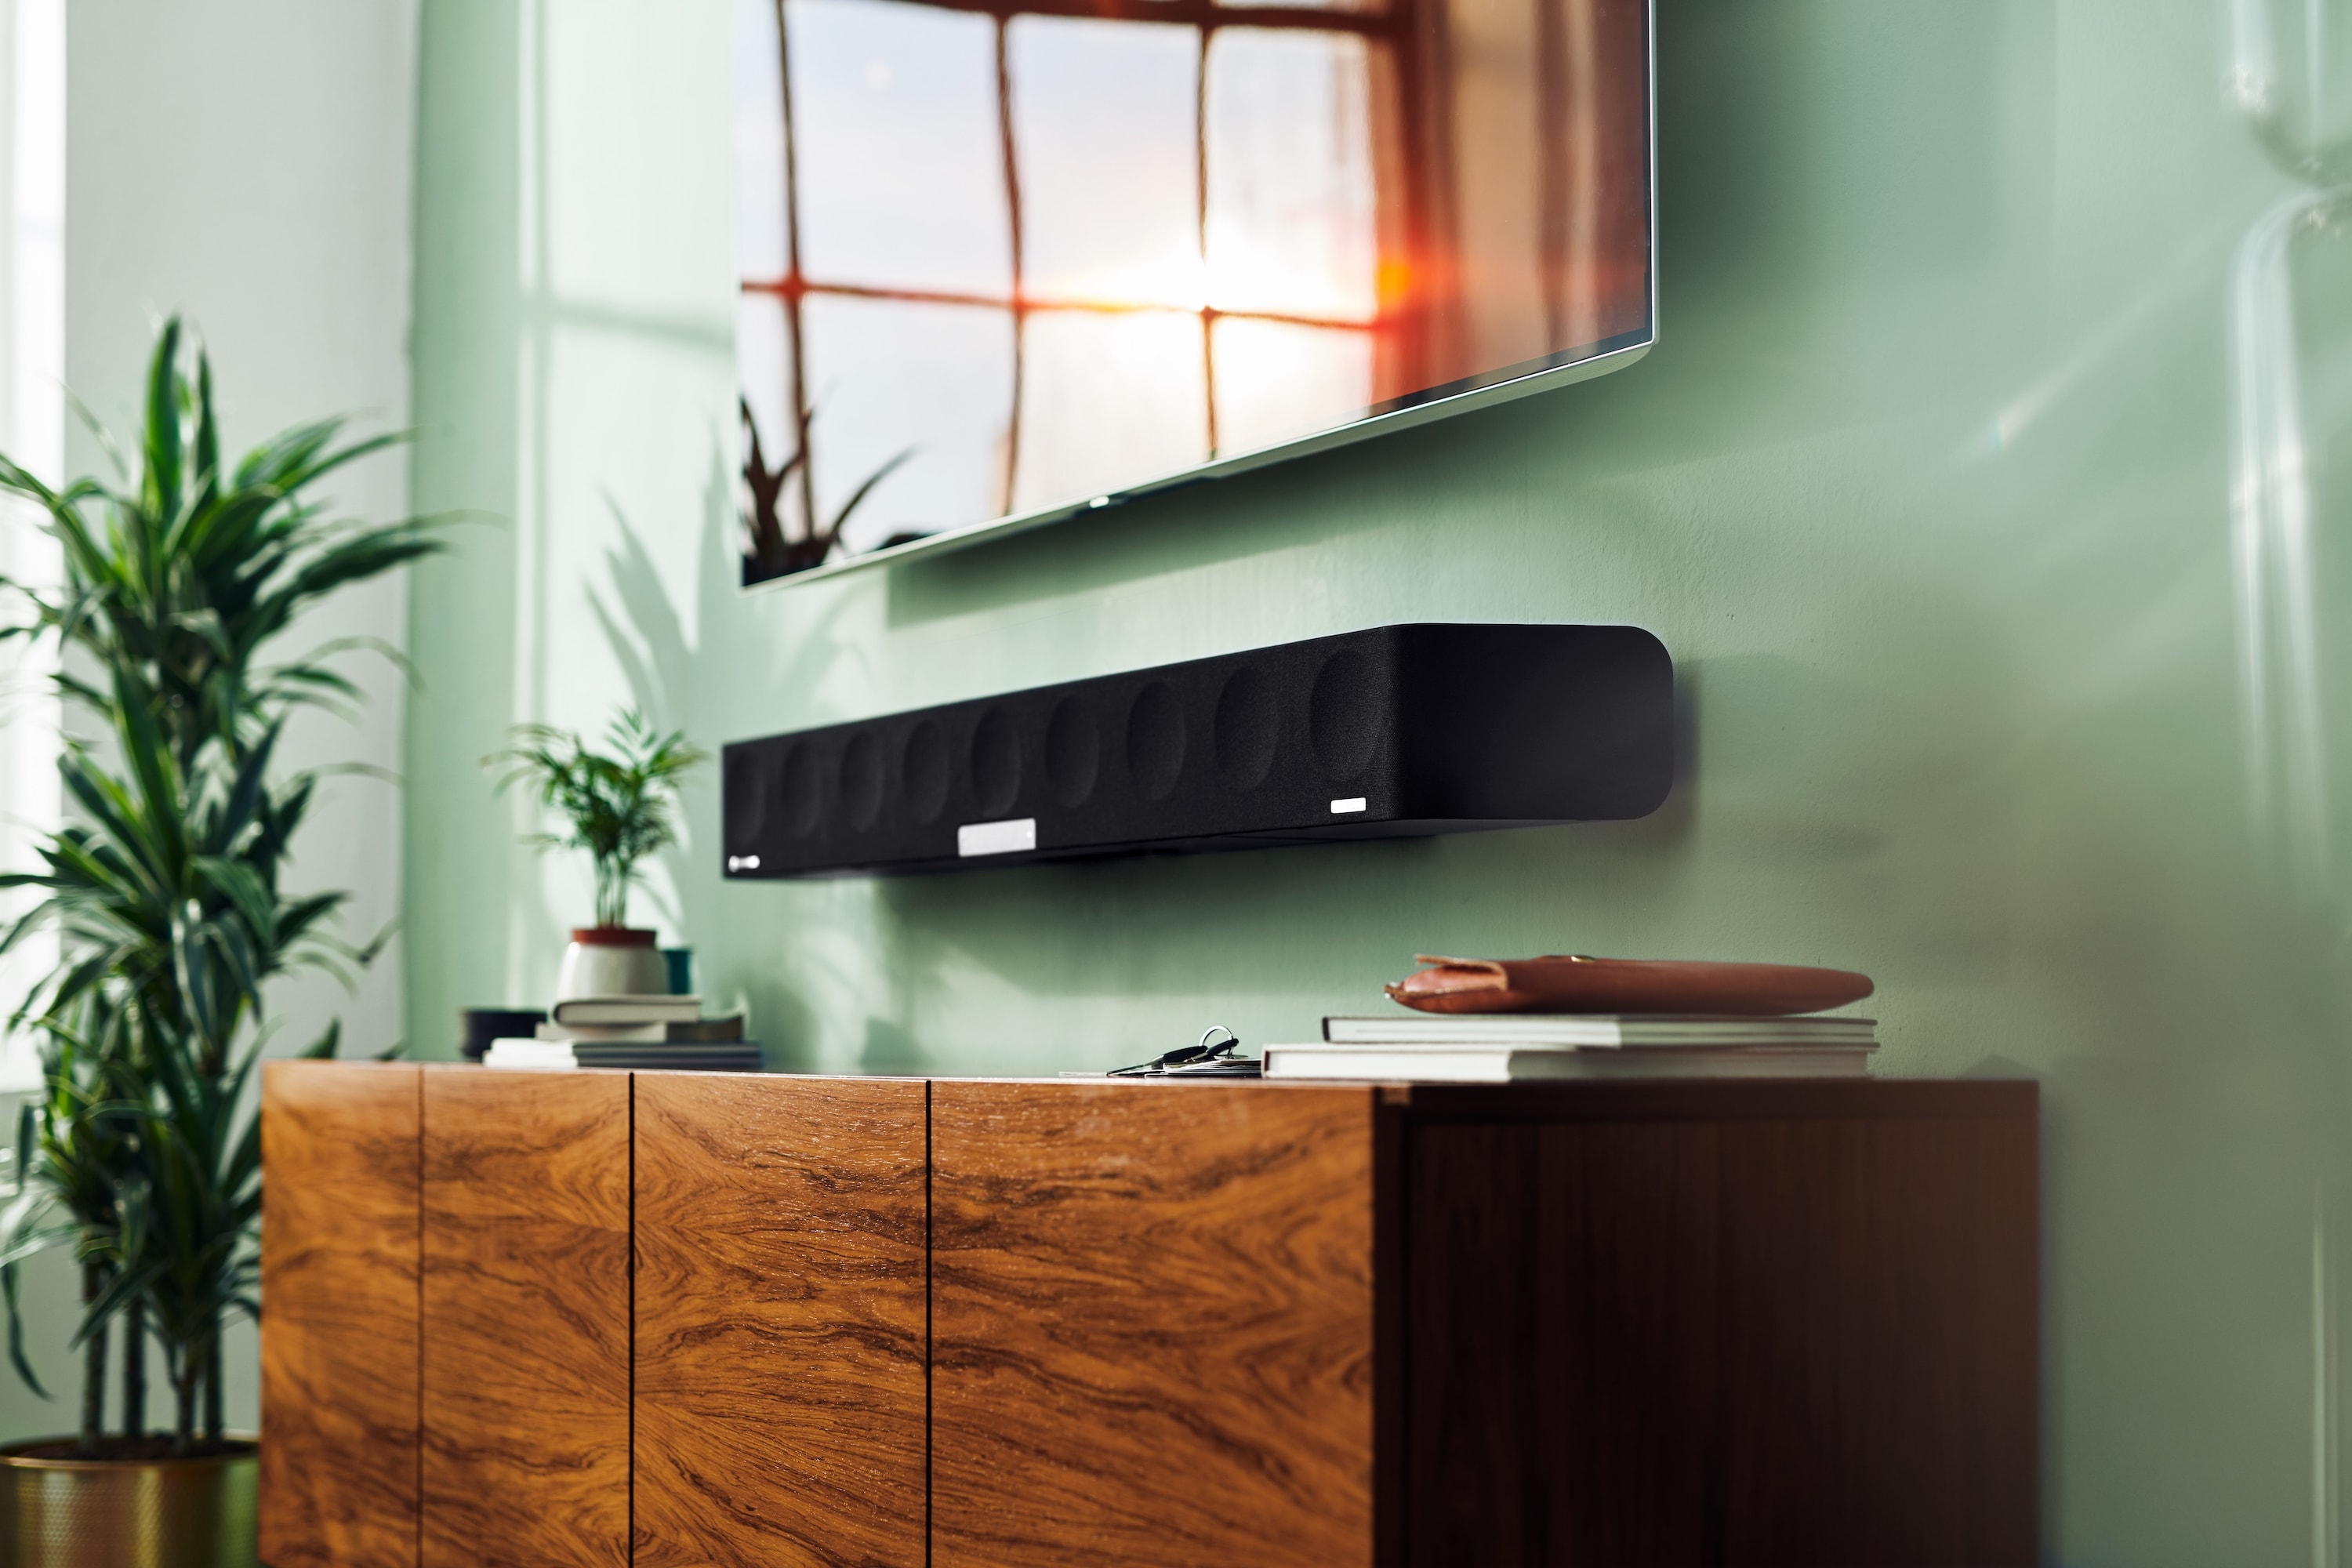 Sennheiser 全新 AMBEO Soundbar 3D 音箱即将发售